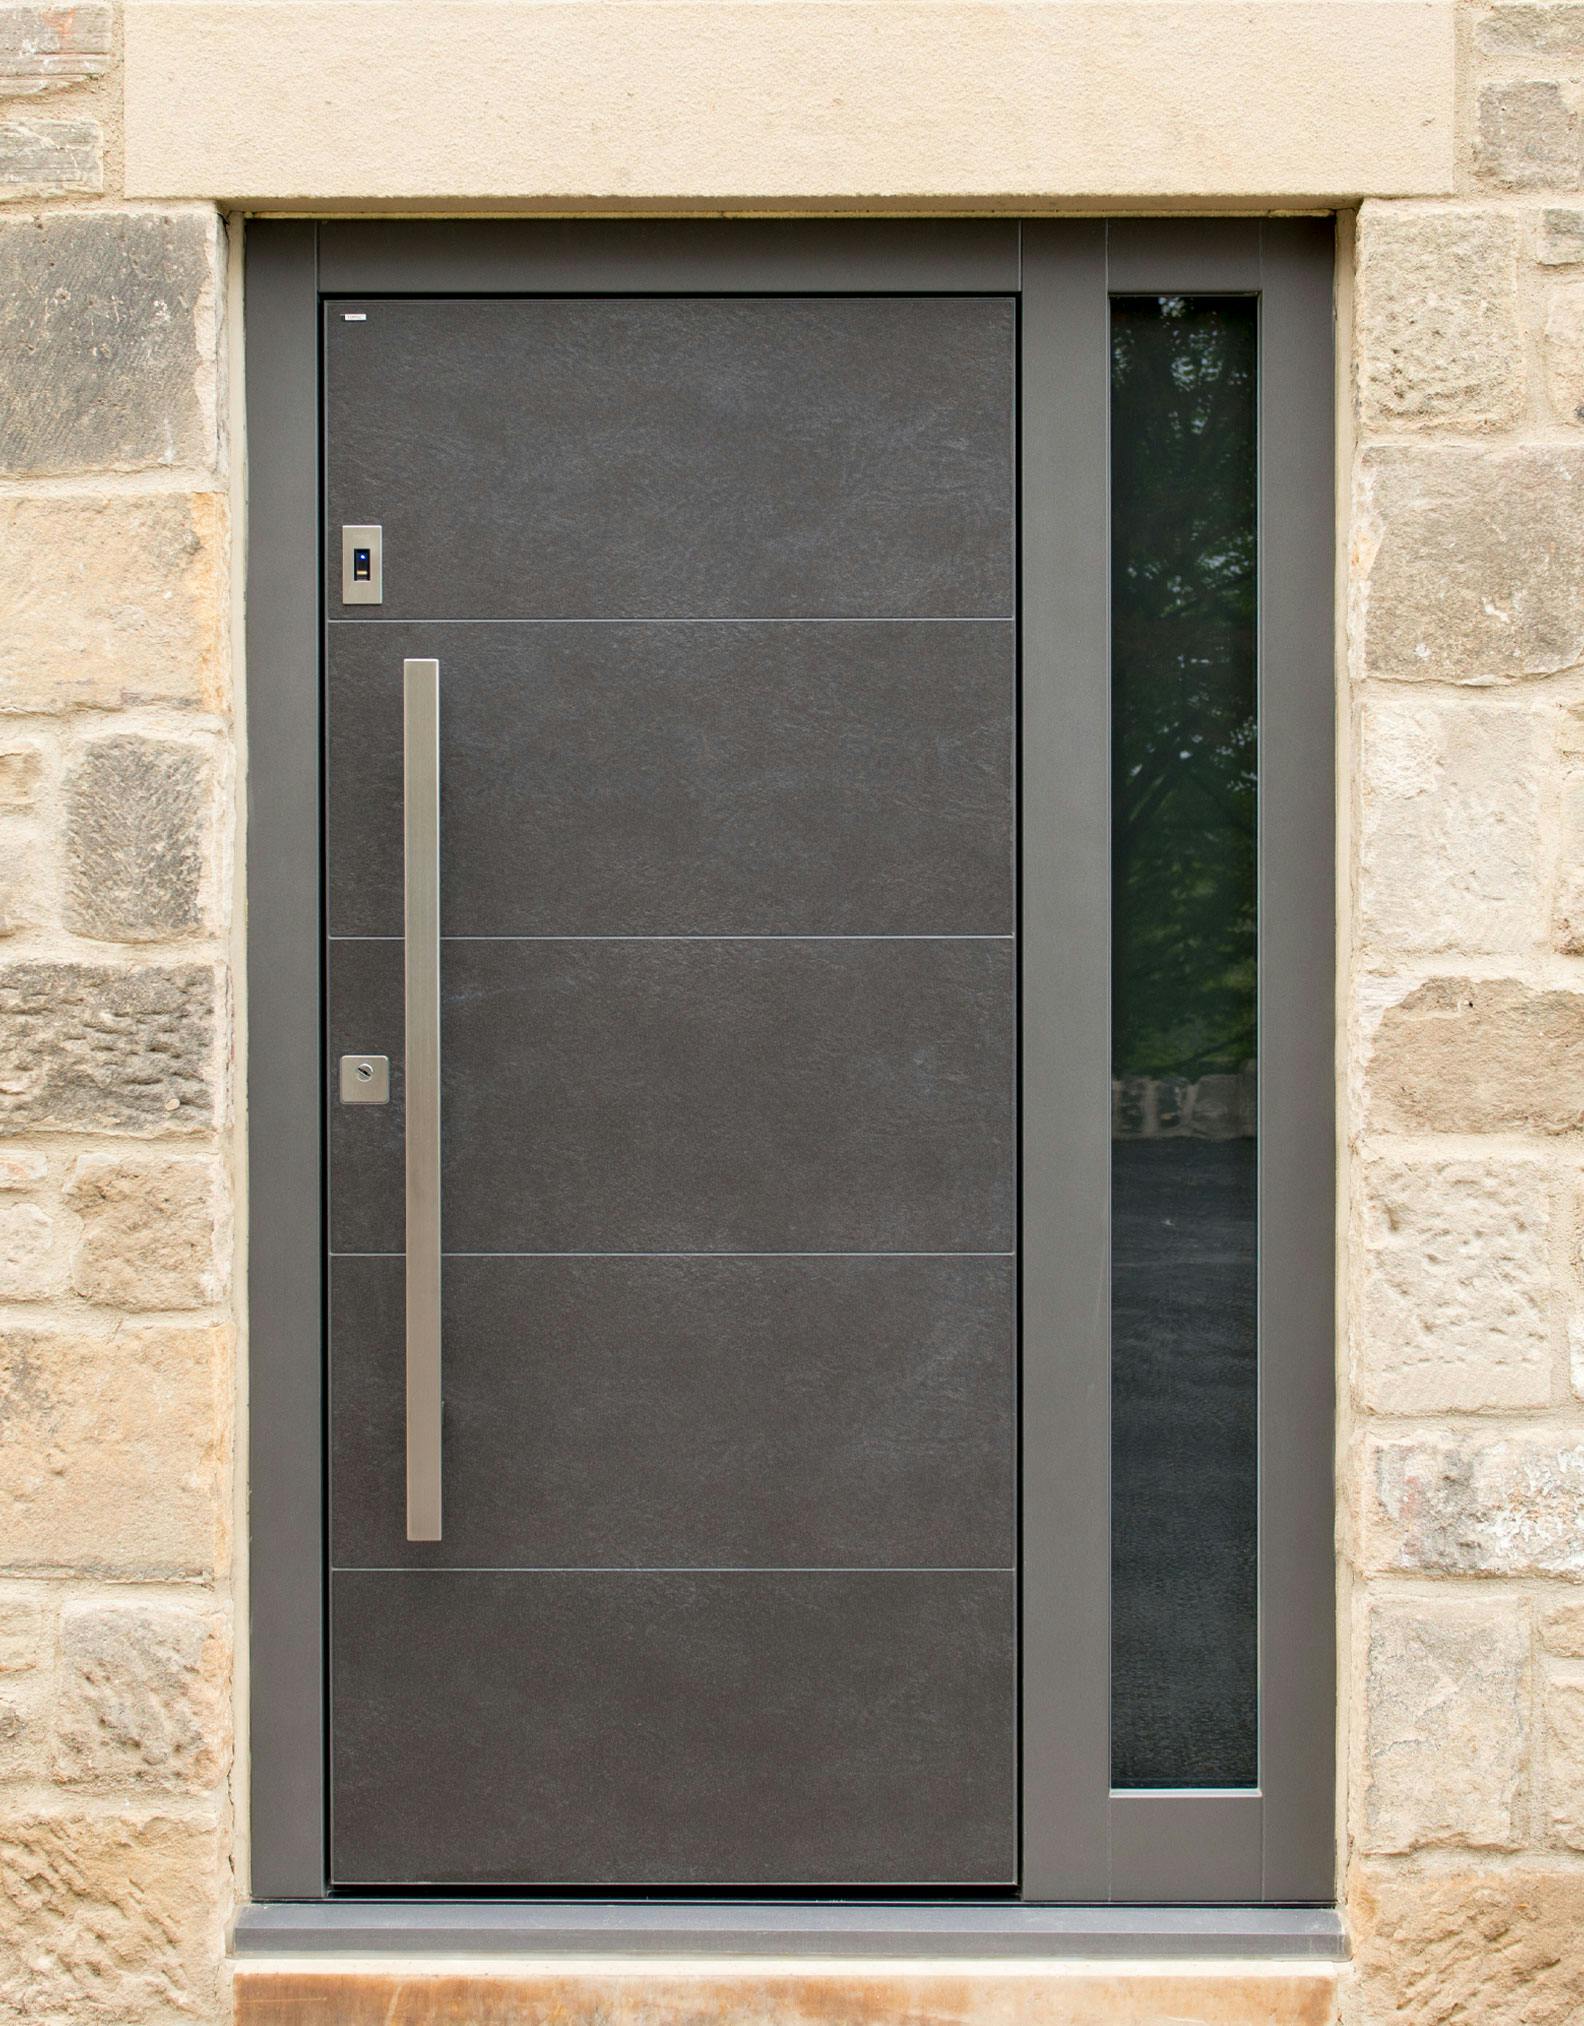 Luxury front door by Deuren - Pianura 1, in grey slate-look finish with long, square, bar handle.